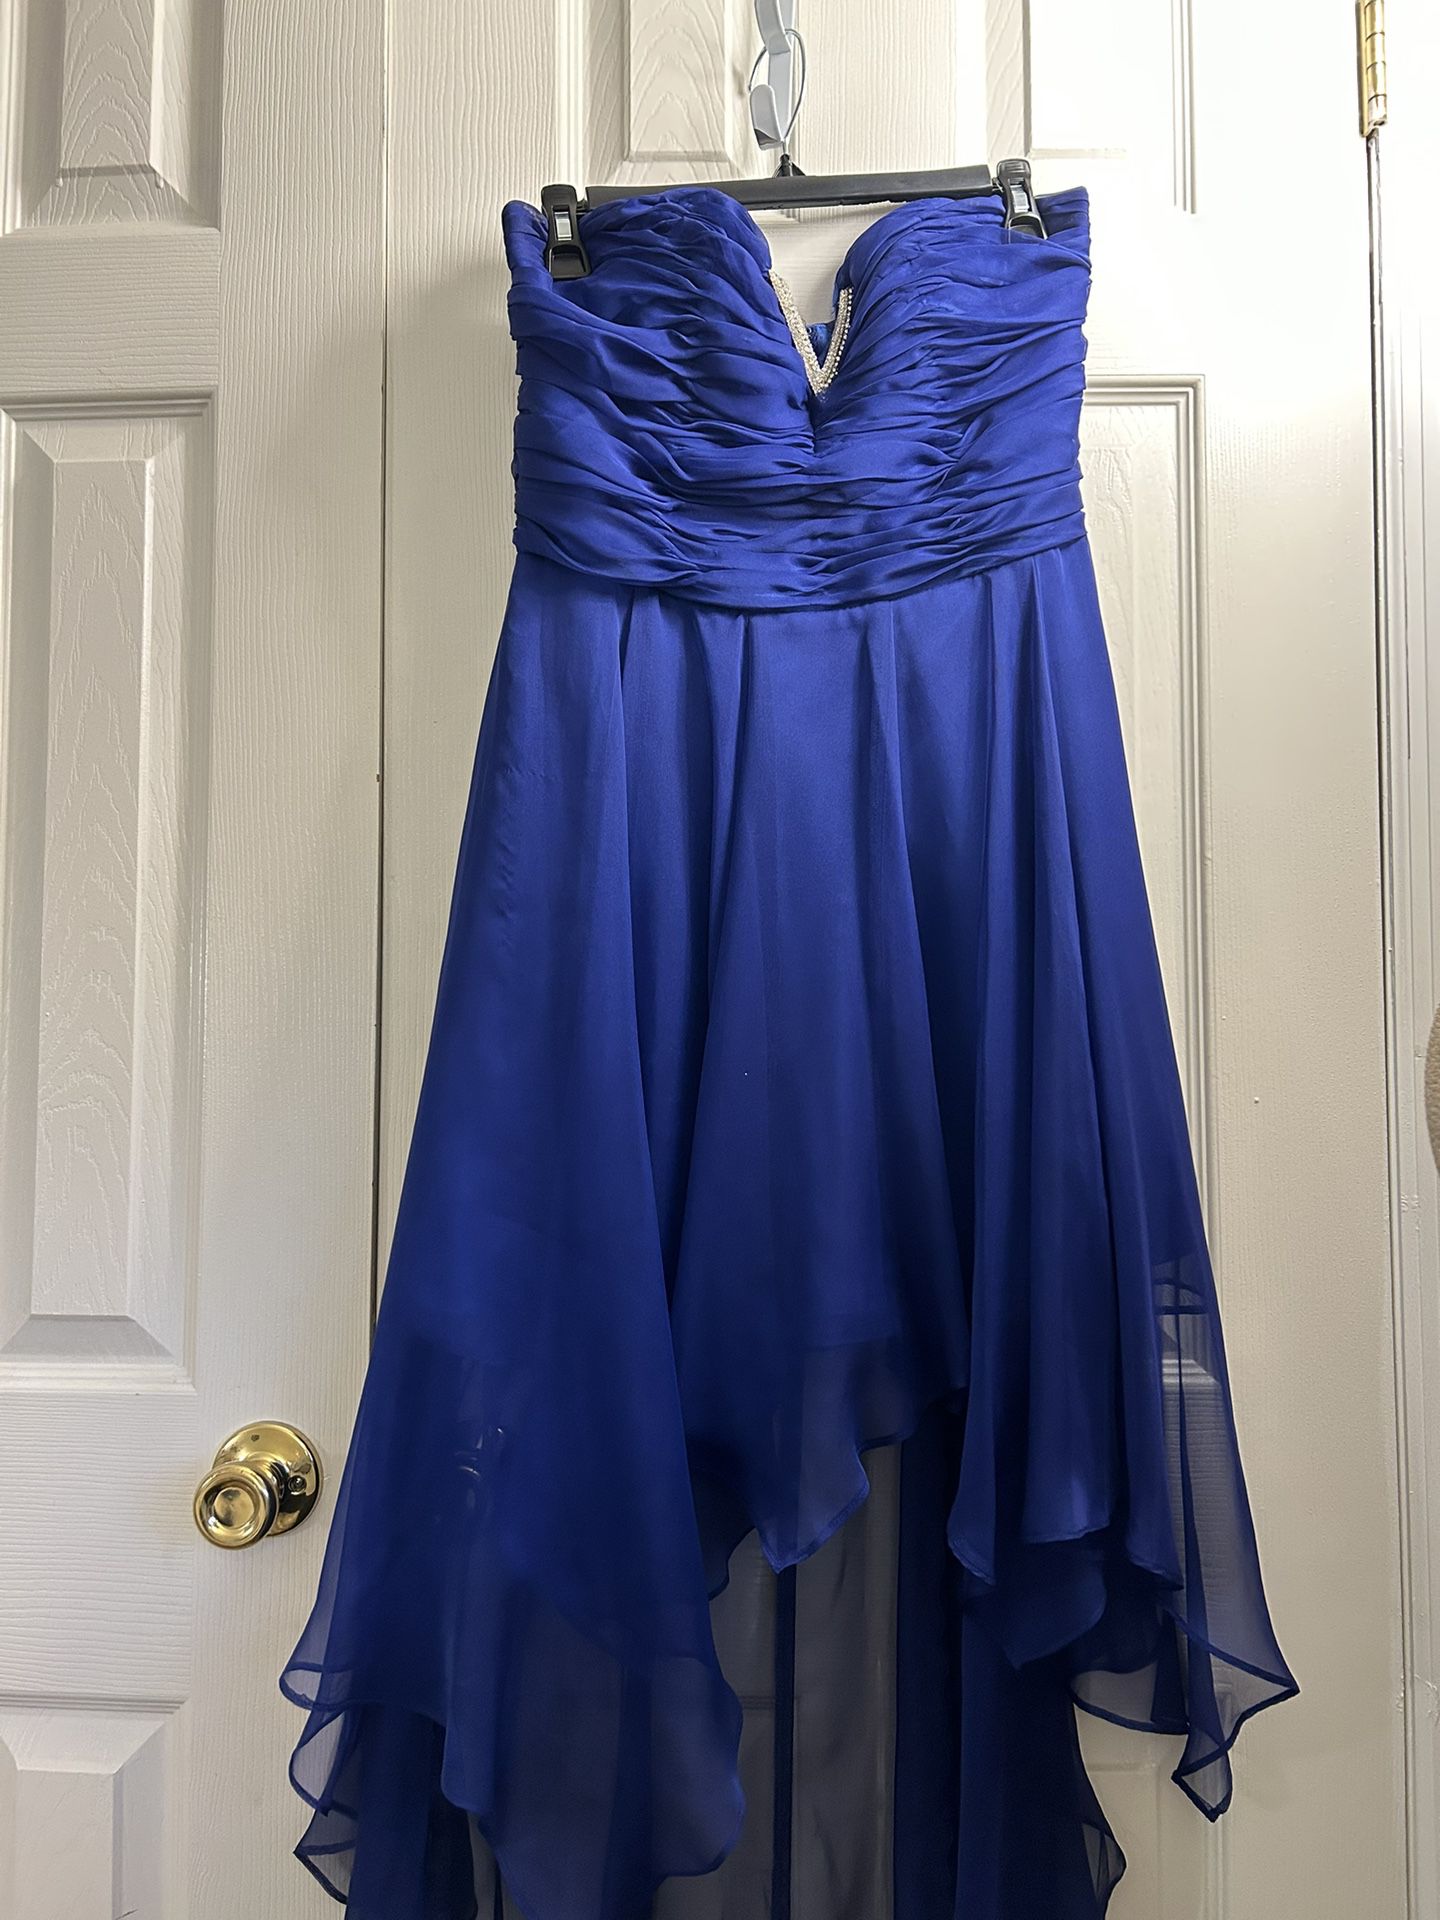 Dress, Royal Blue, Size M